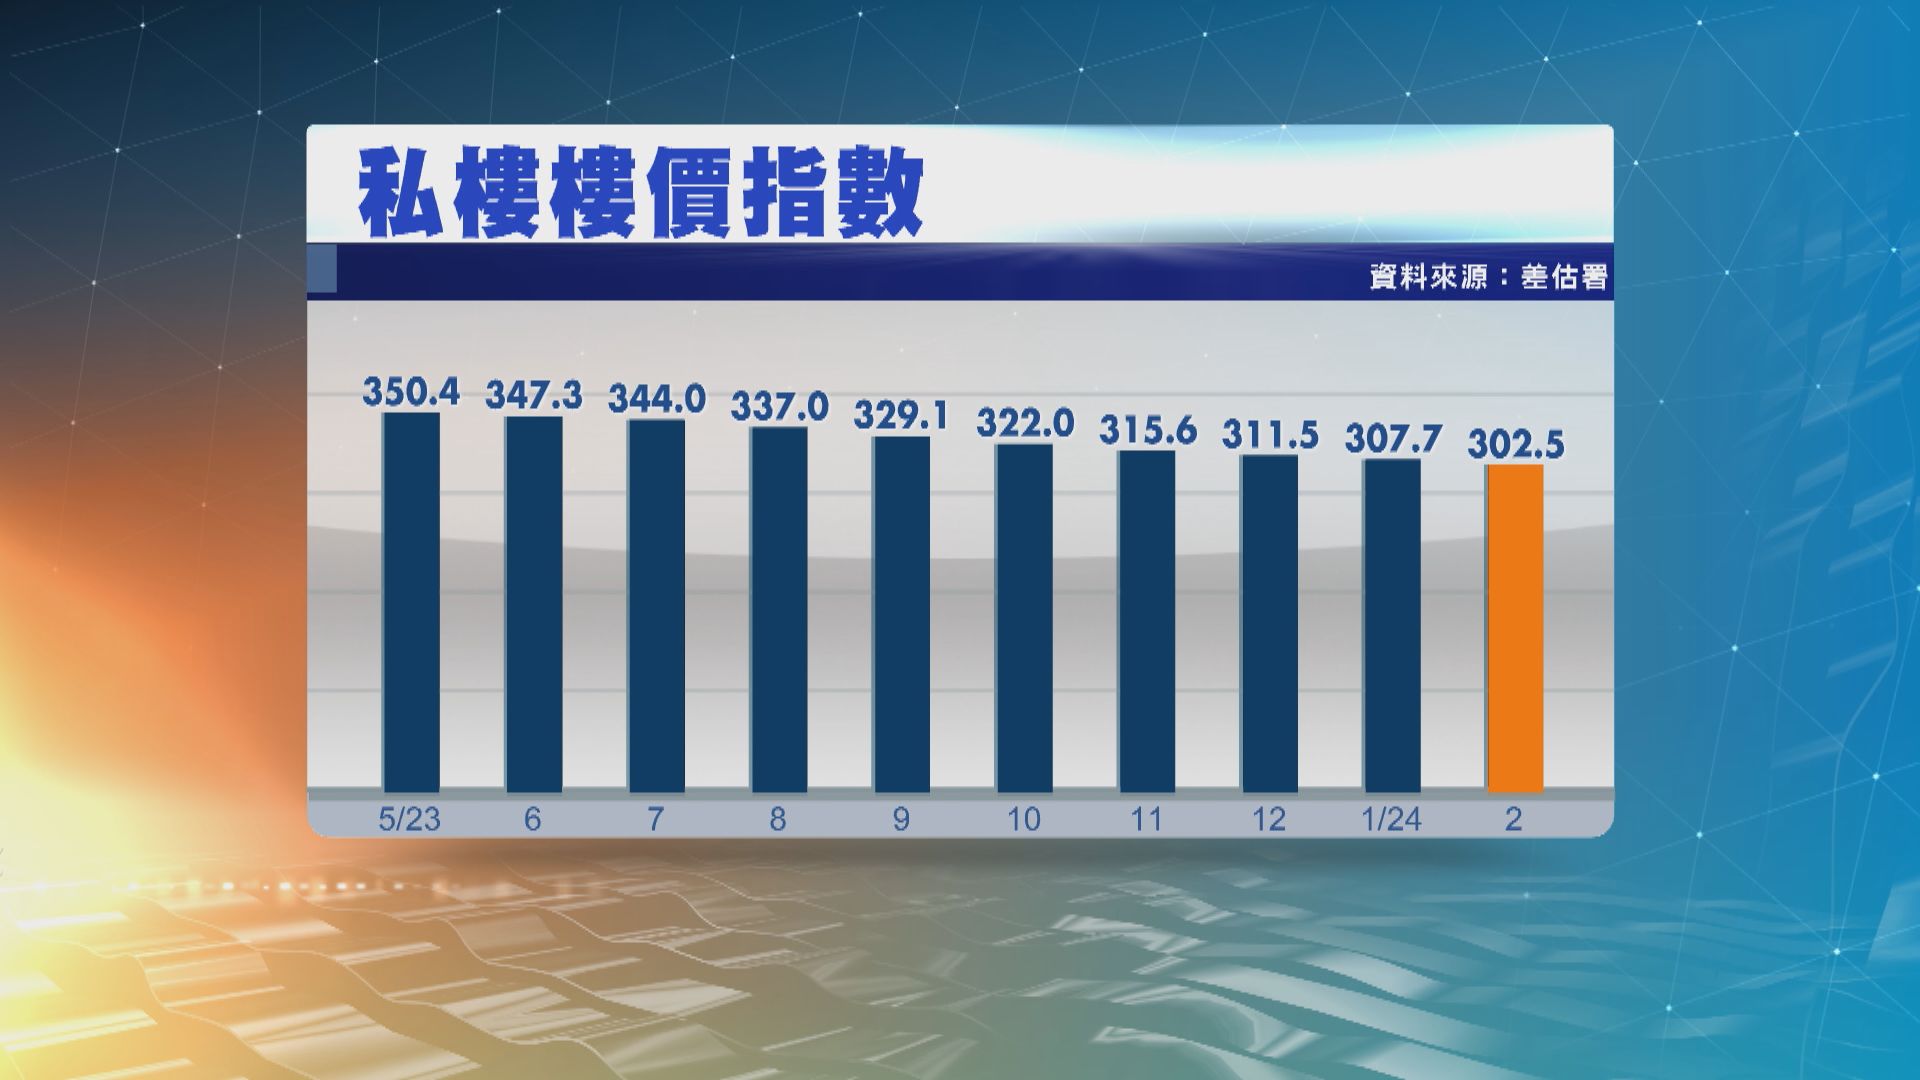 本港2月私樓樓價跌1.68% 連跌10個月